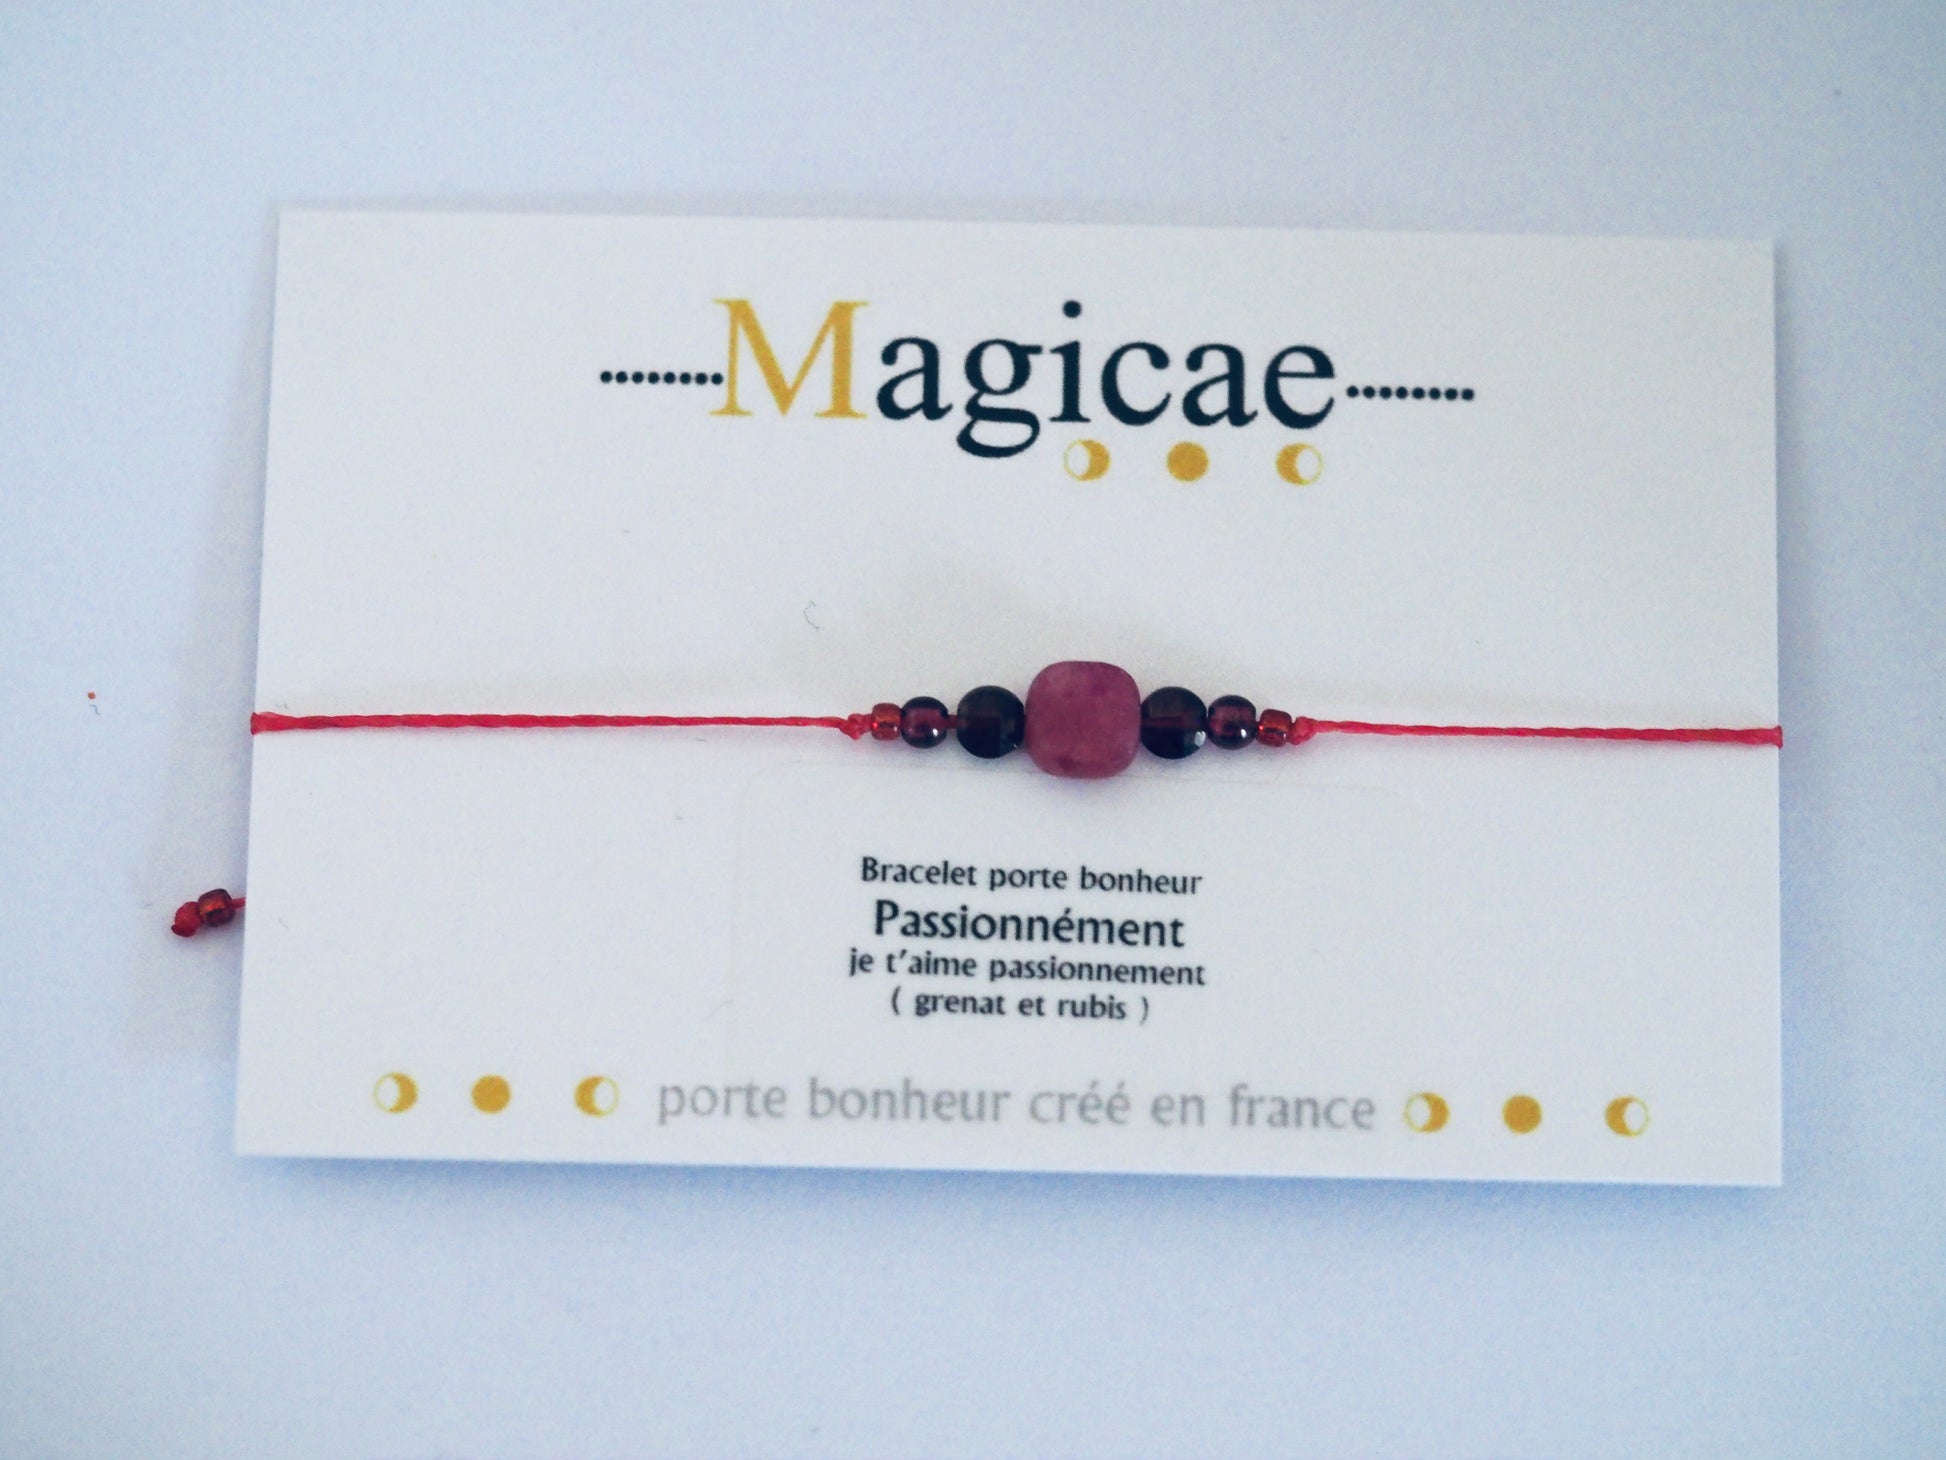 Bracelet porte bonheur "PASSIONNÉMENT " - Magicae